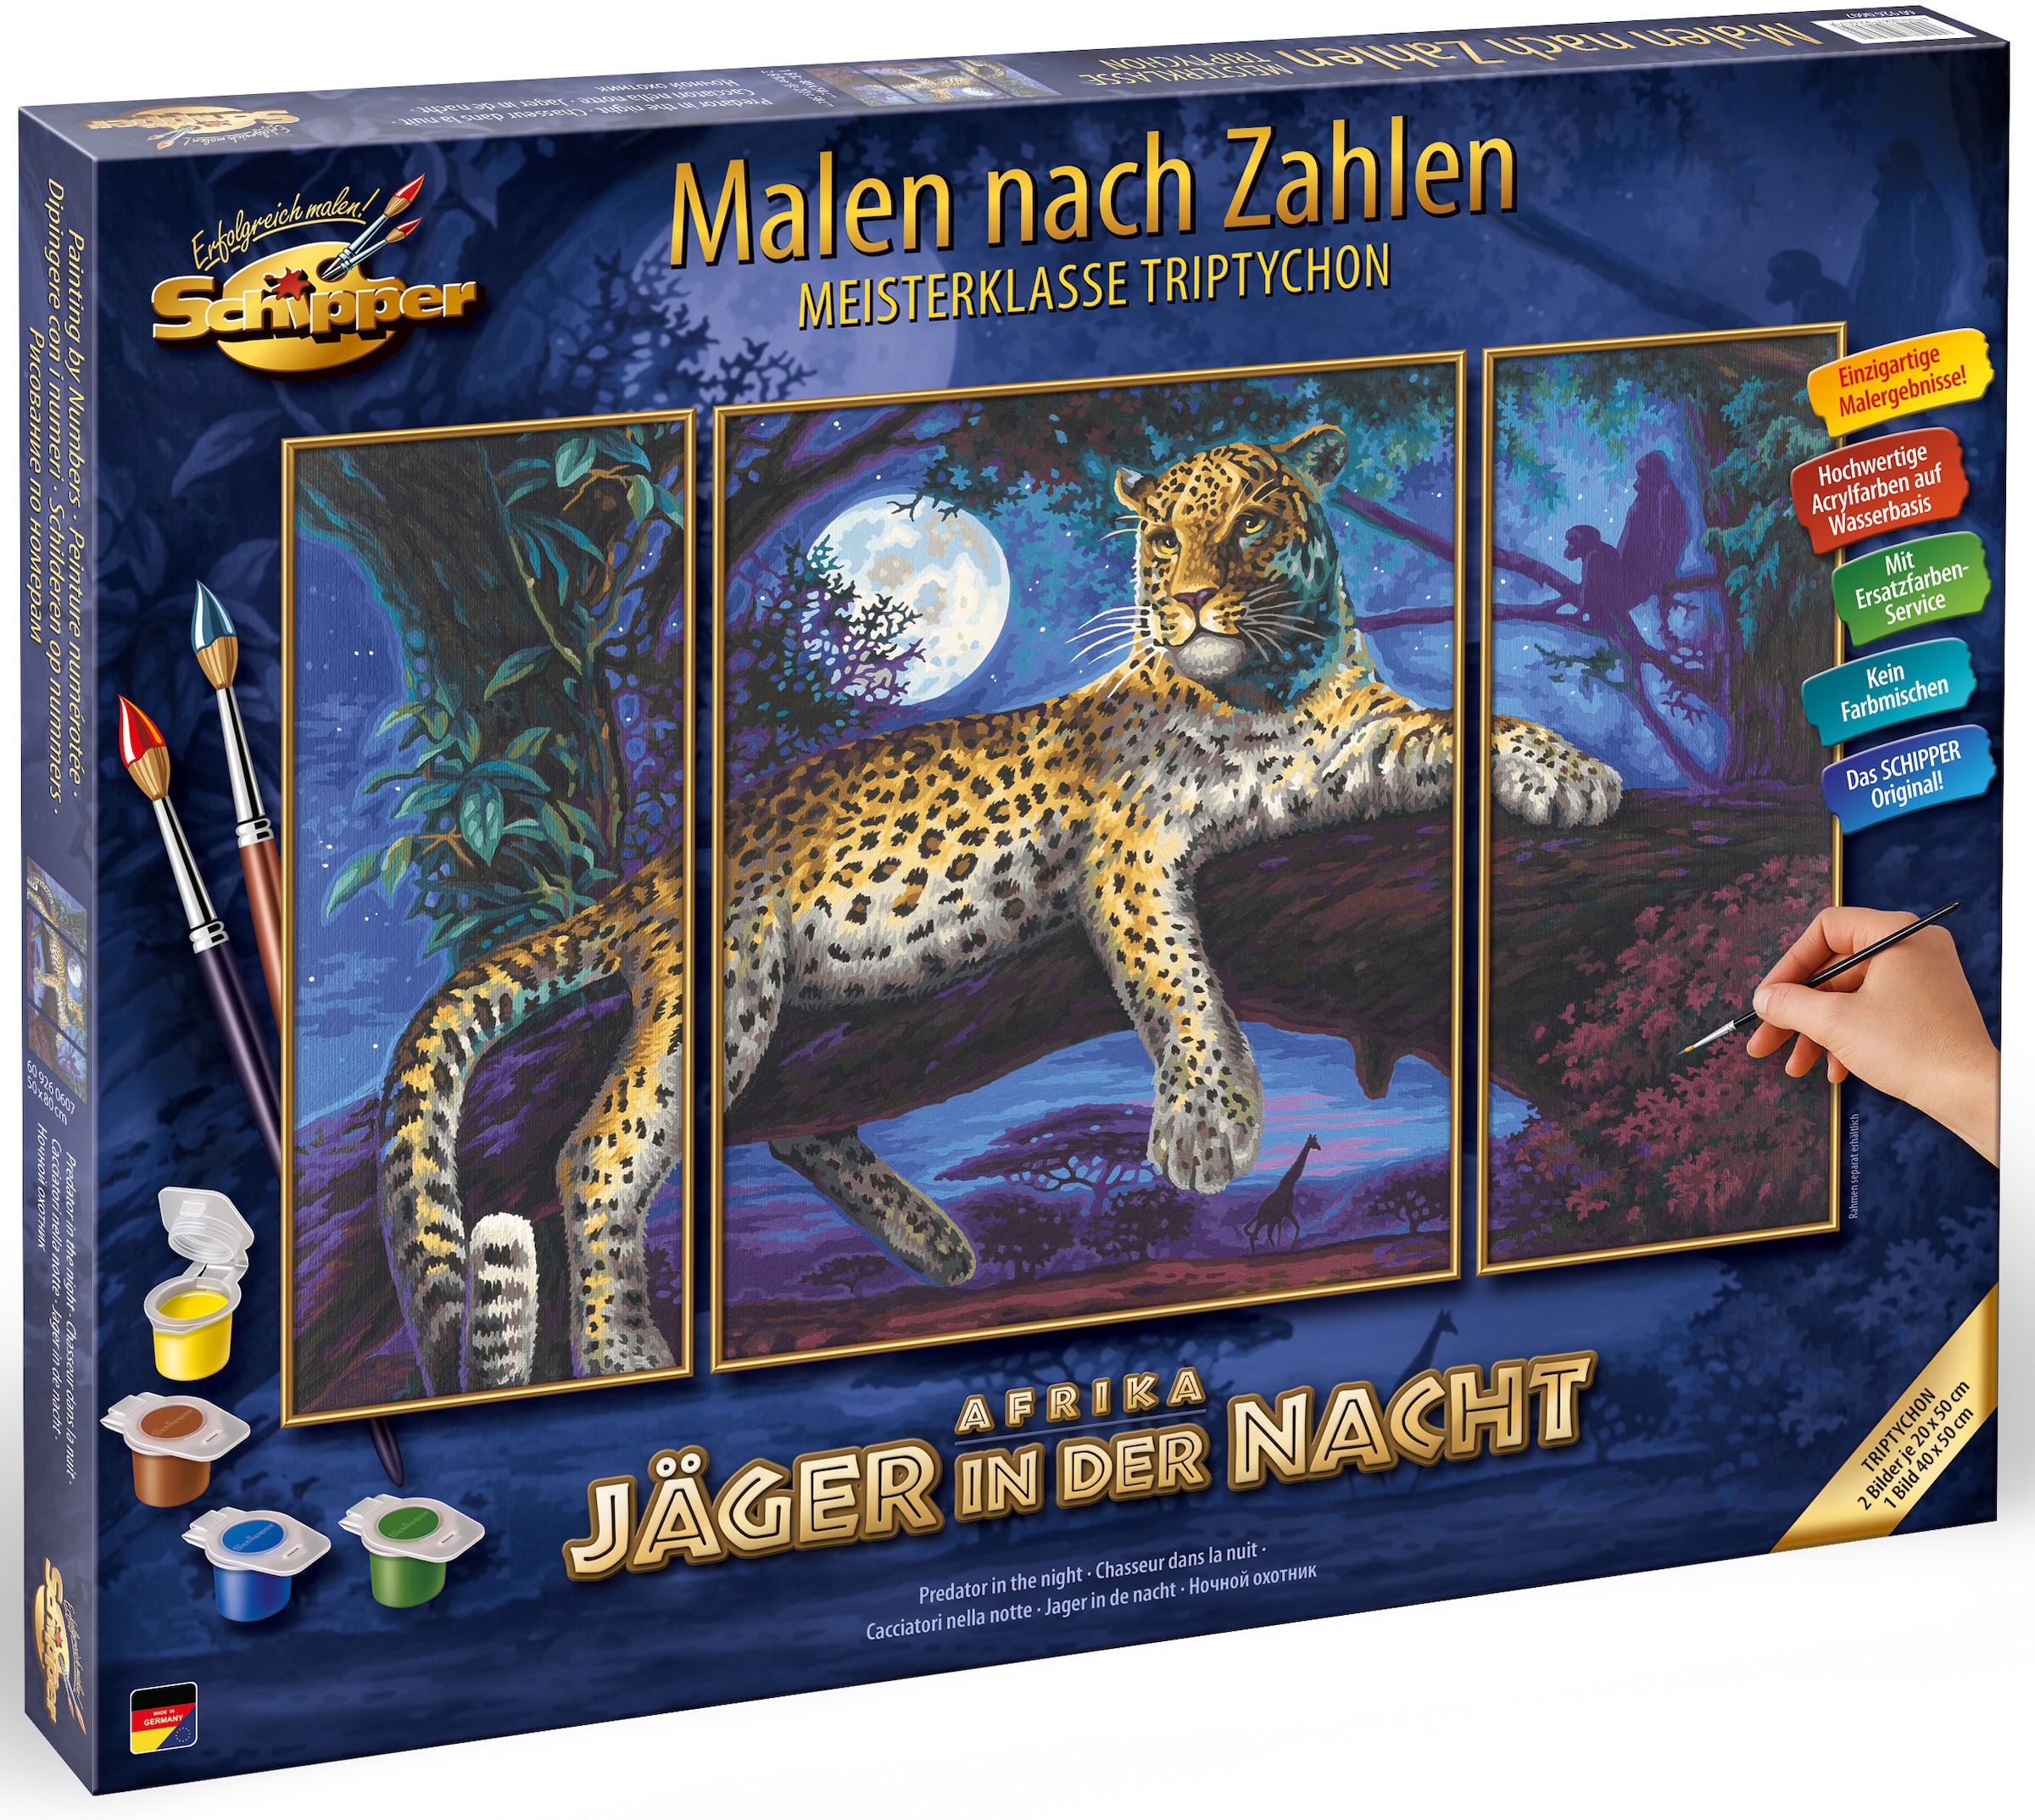 Schipper Malen nach Zahlen »Meisterklasse Jäger Made der in bei - in Nacht«, Germany Triptychon